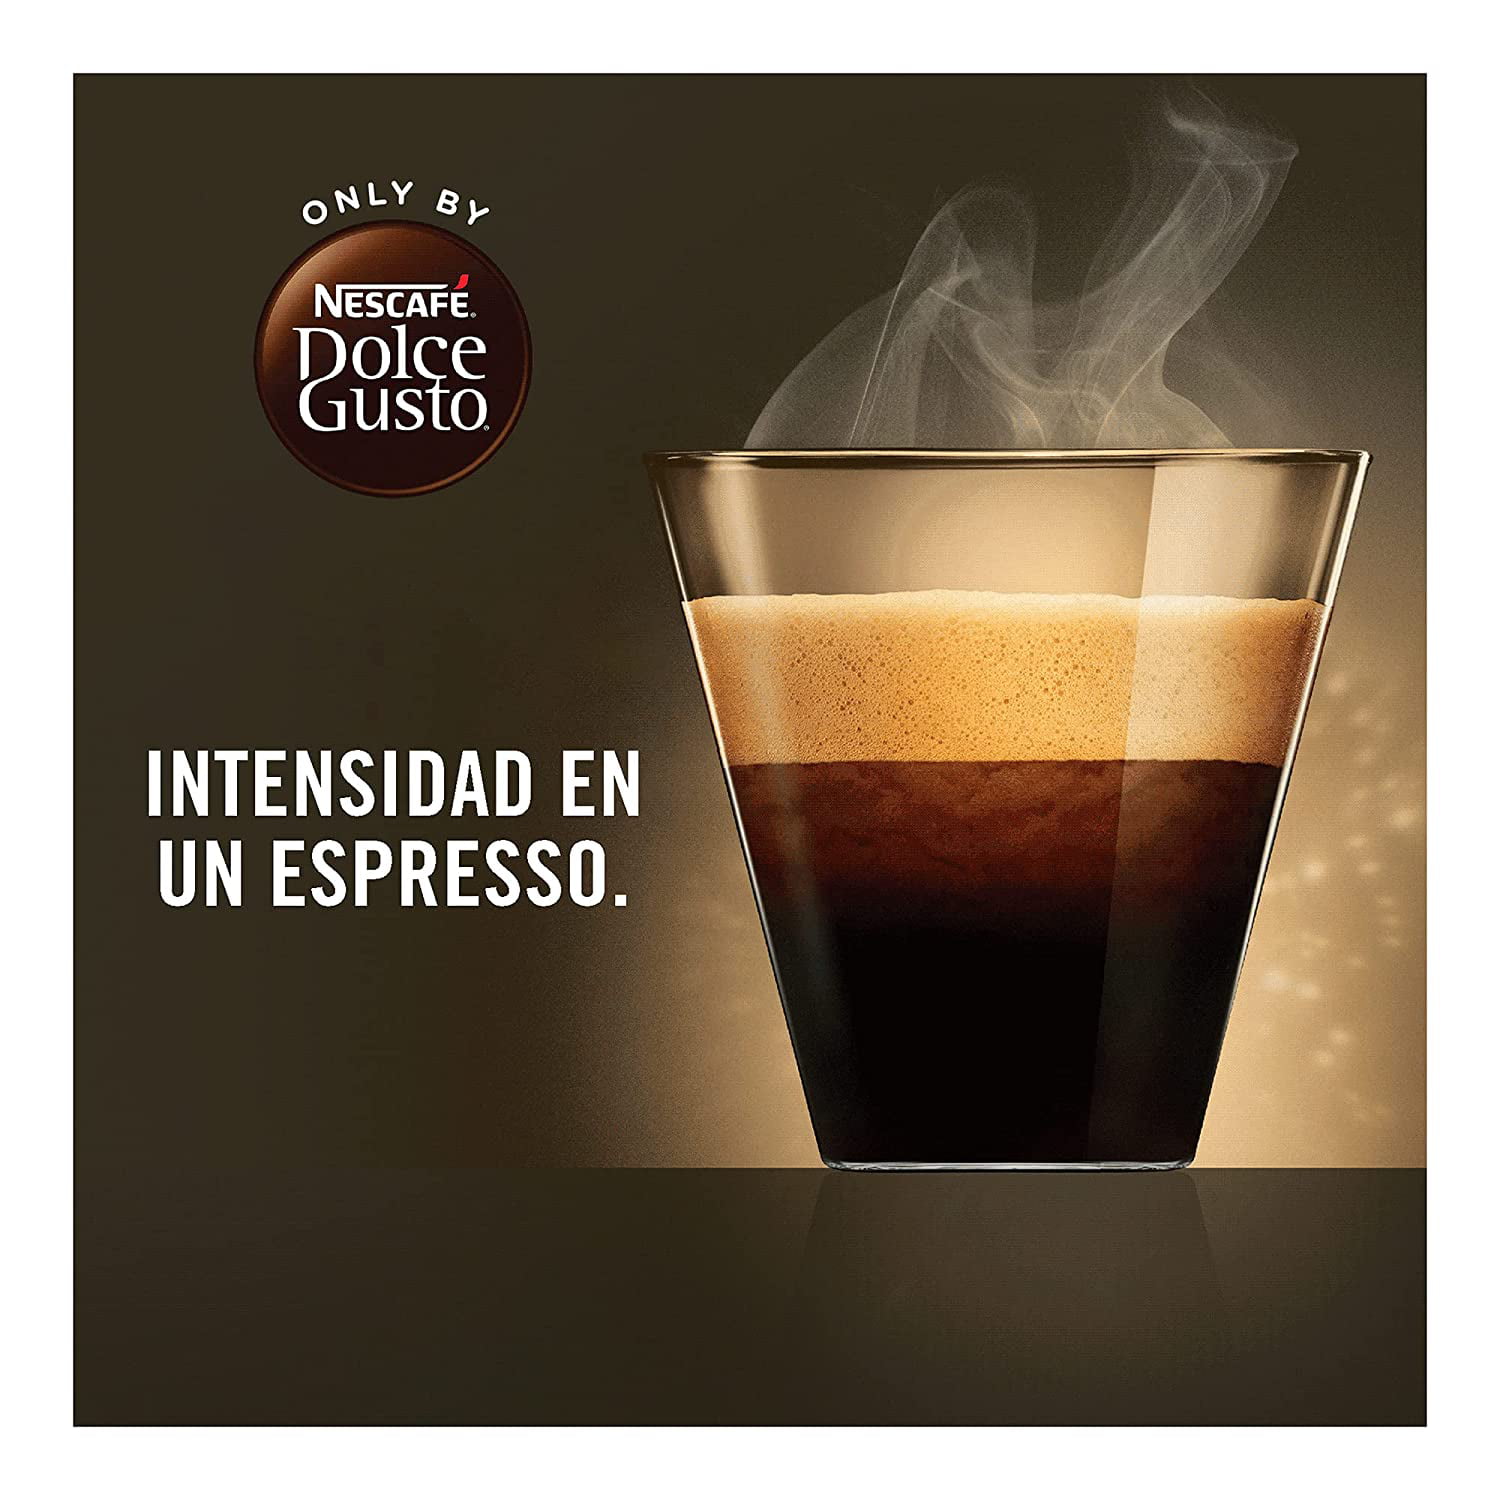 16 Cápsulas compatibles DG Espresso